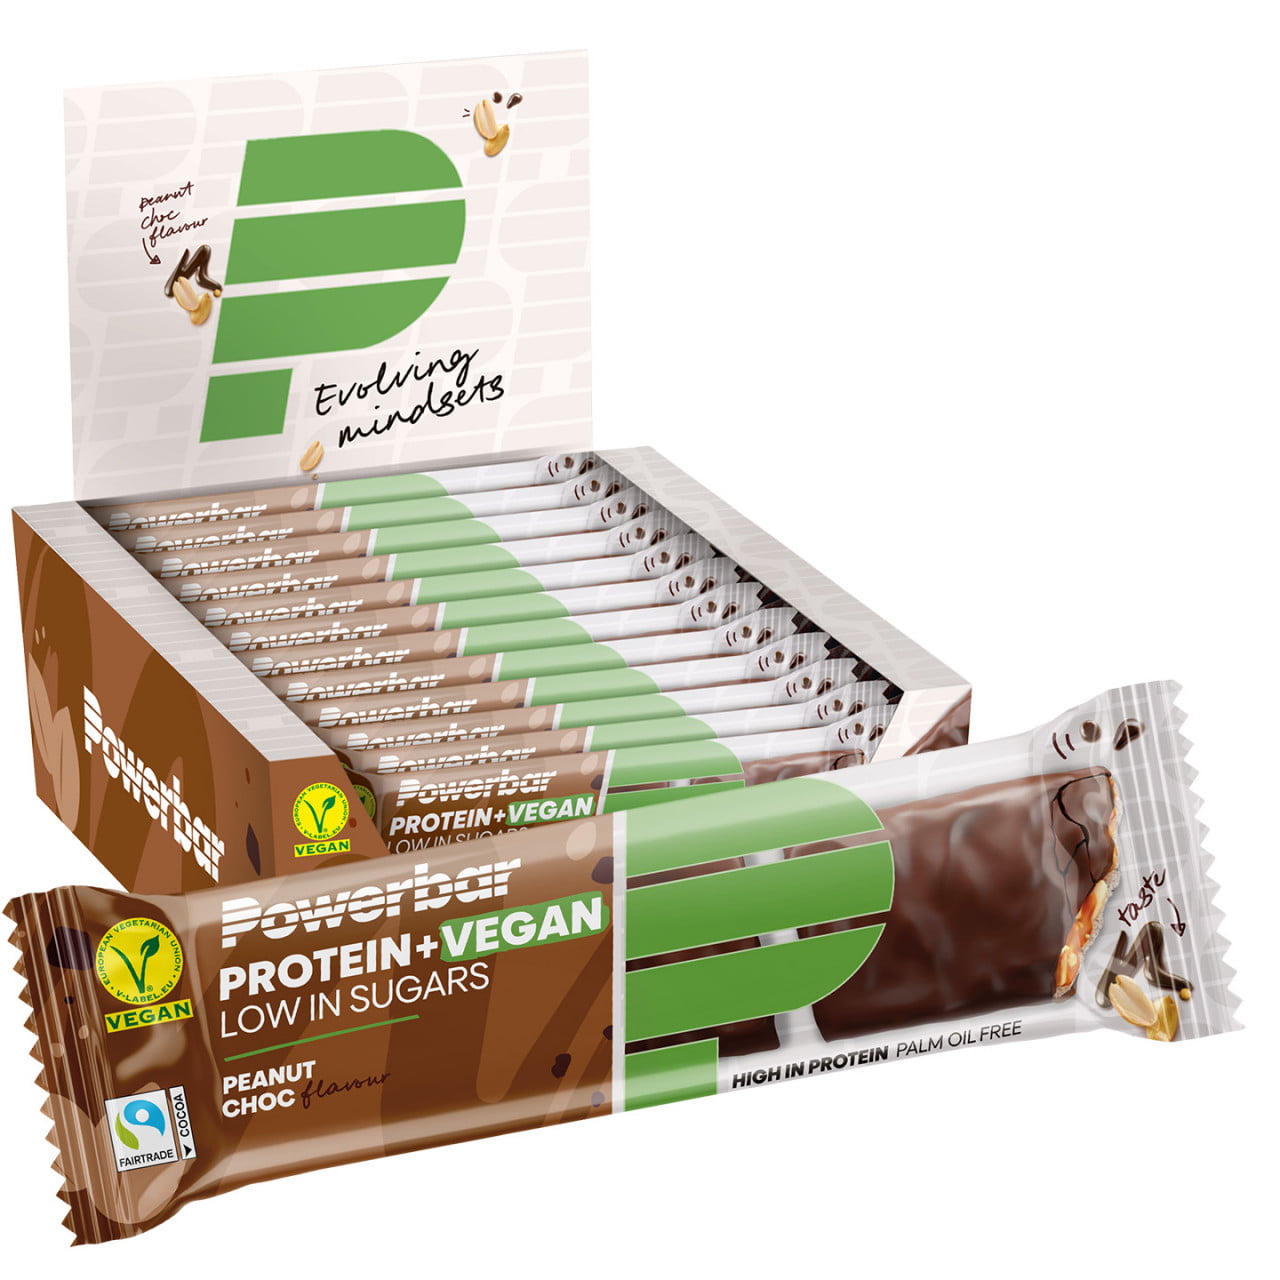 Proteine+ vegane a basso contenuto di zuccheri Peanut Chocolate 12 St.